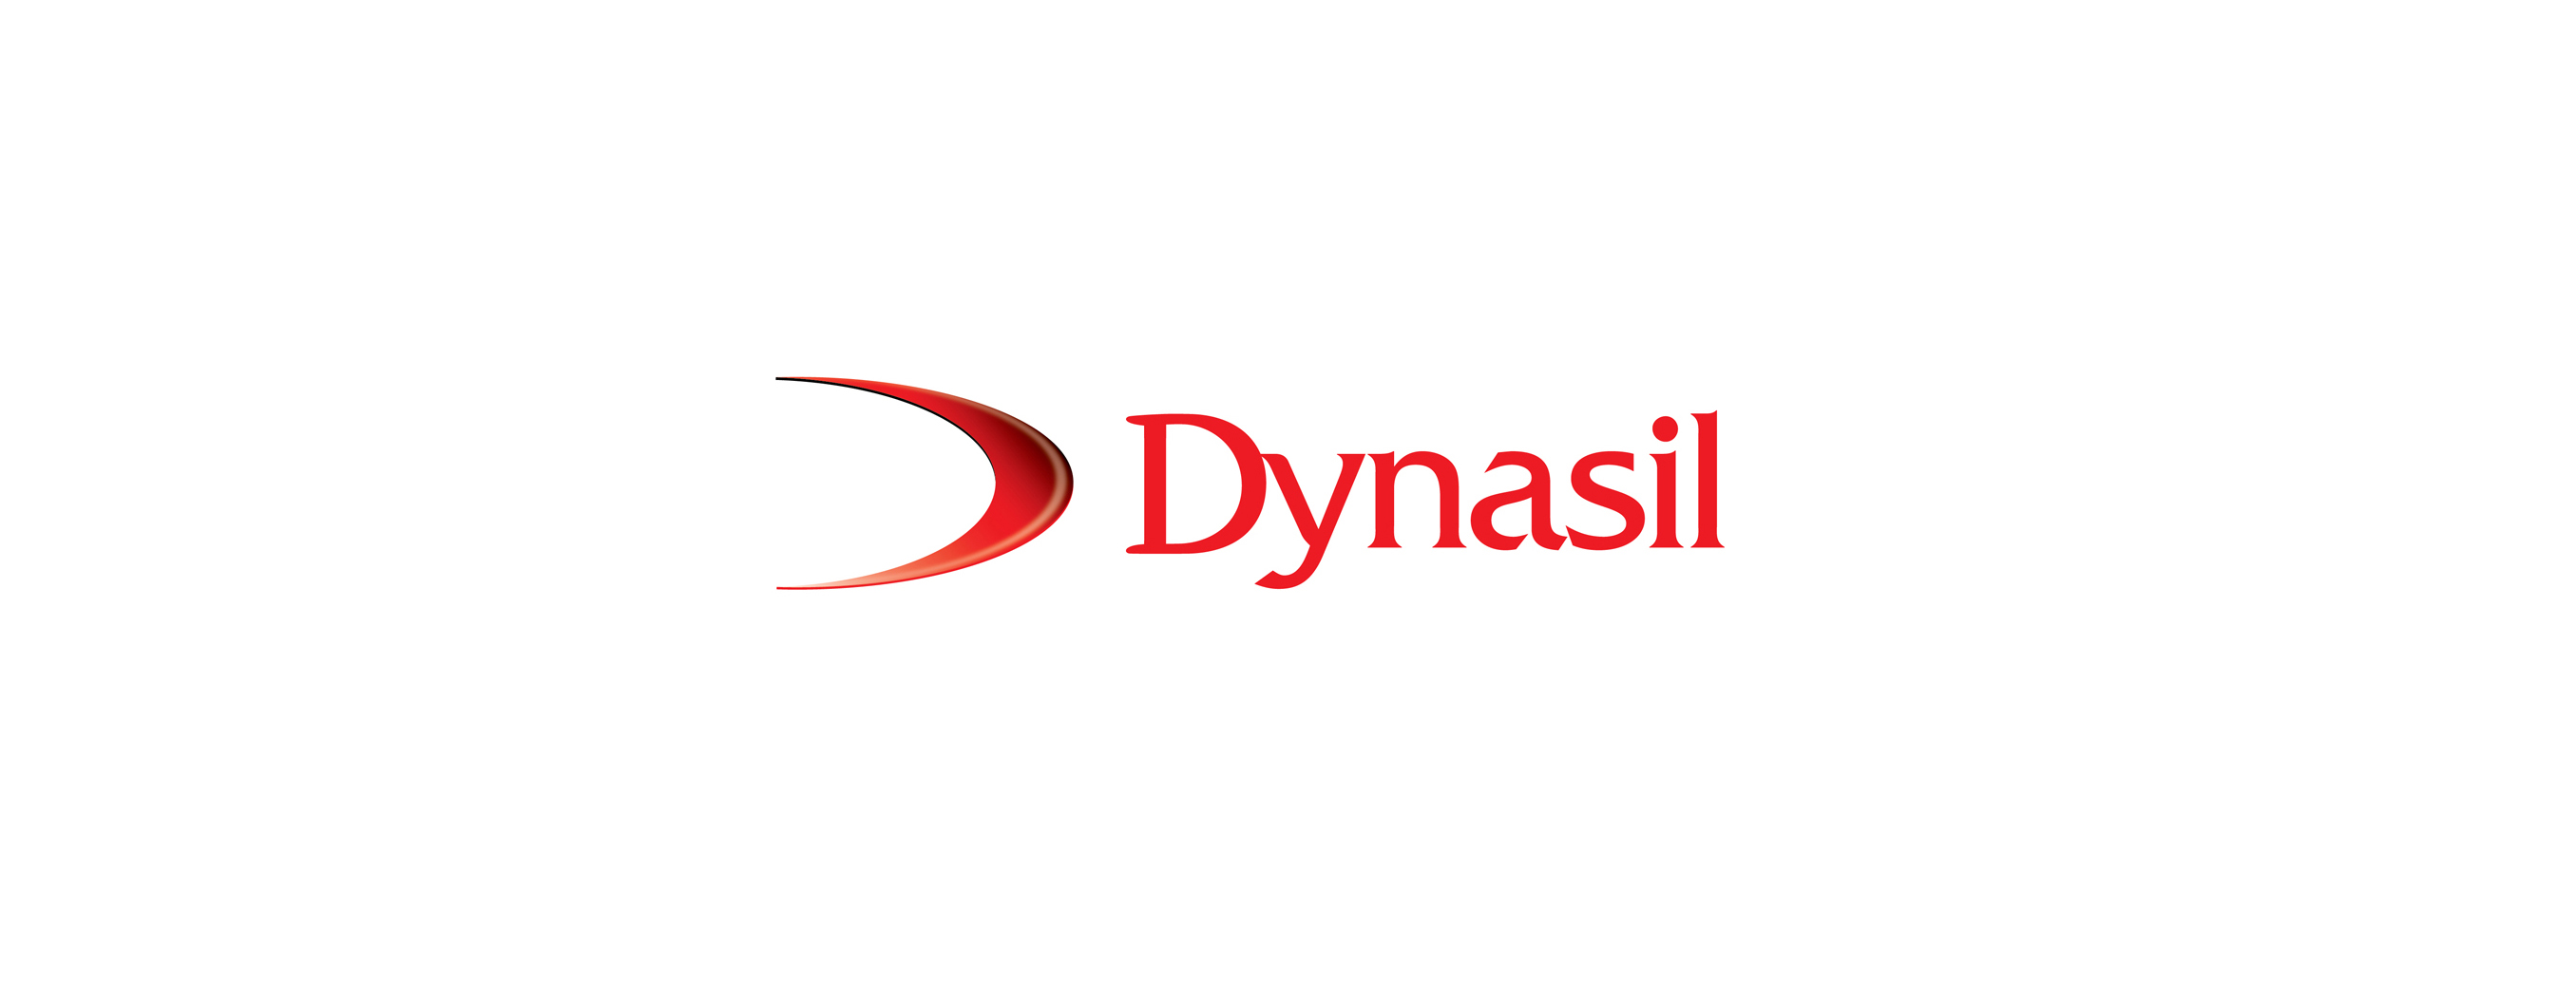 Dynasil